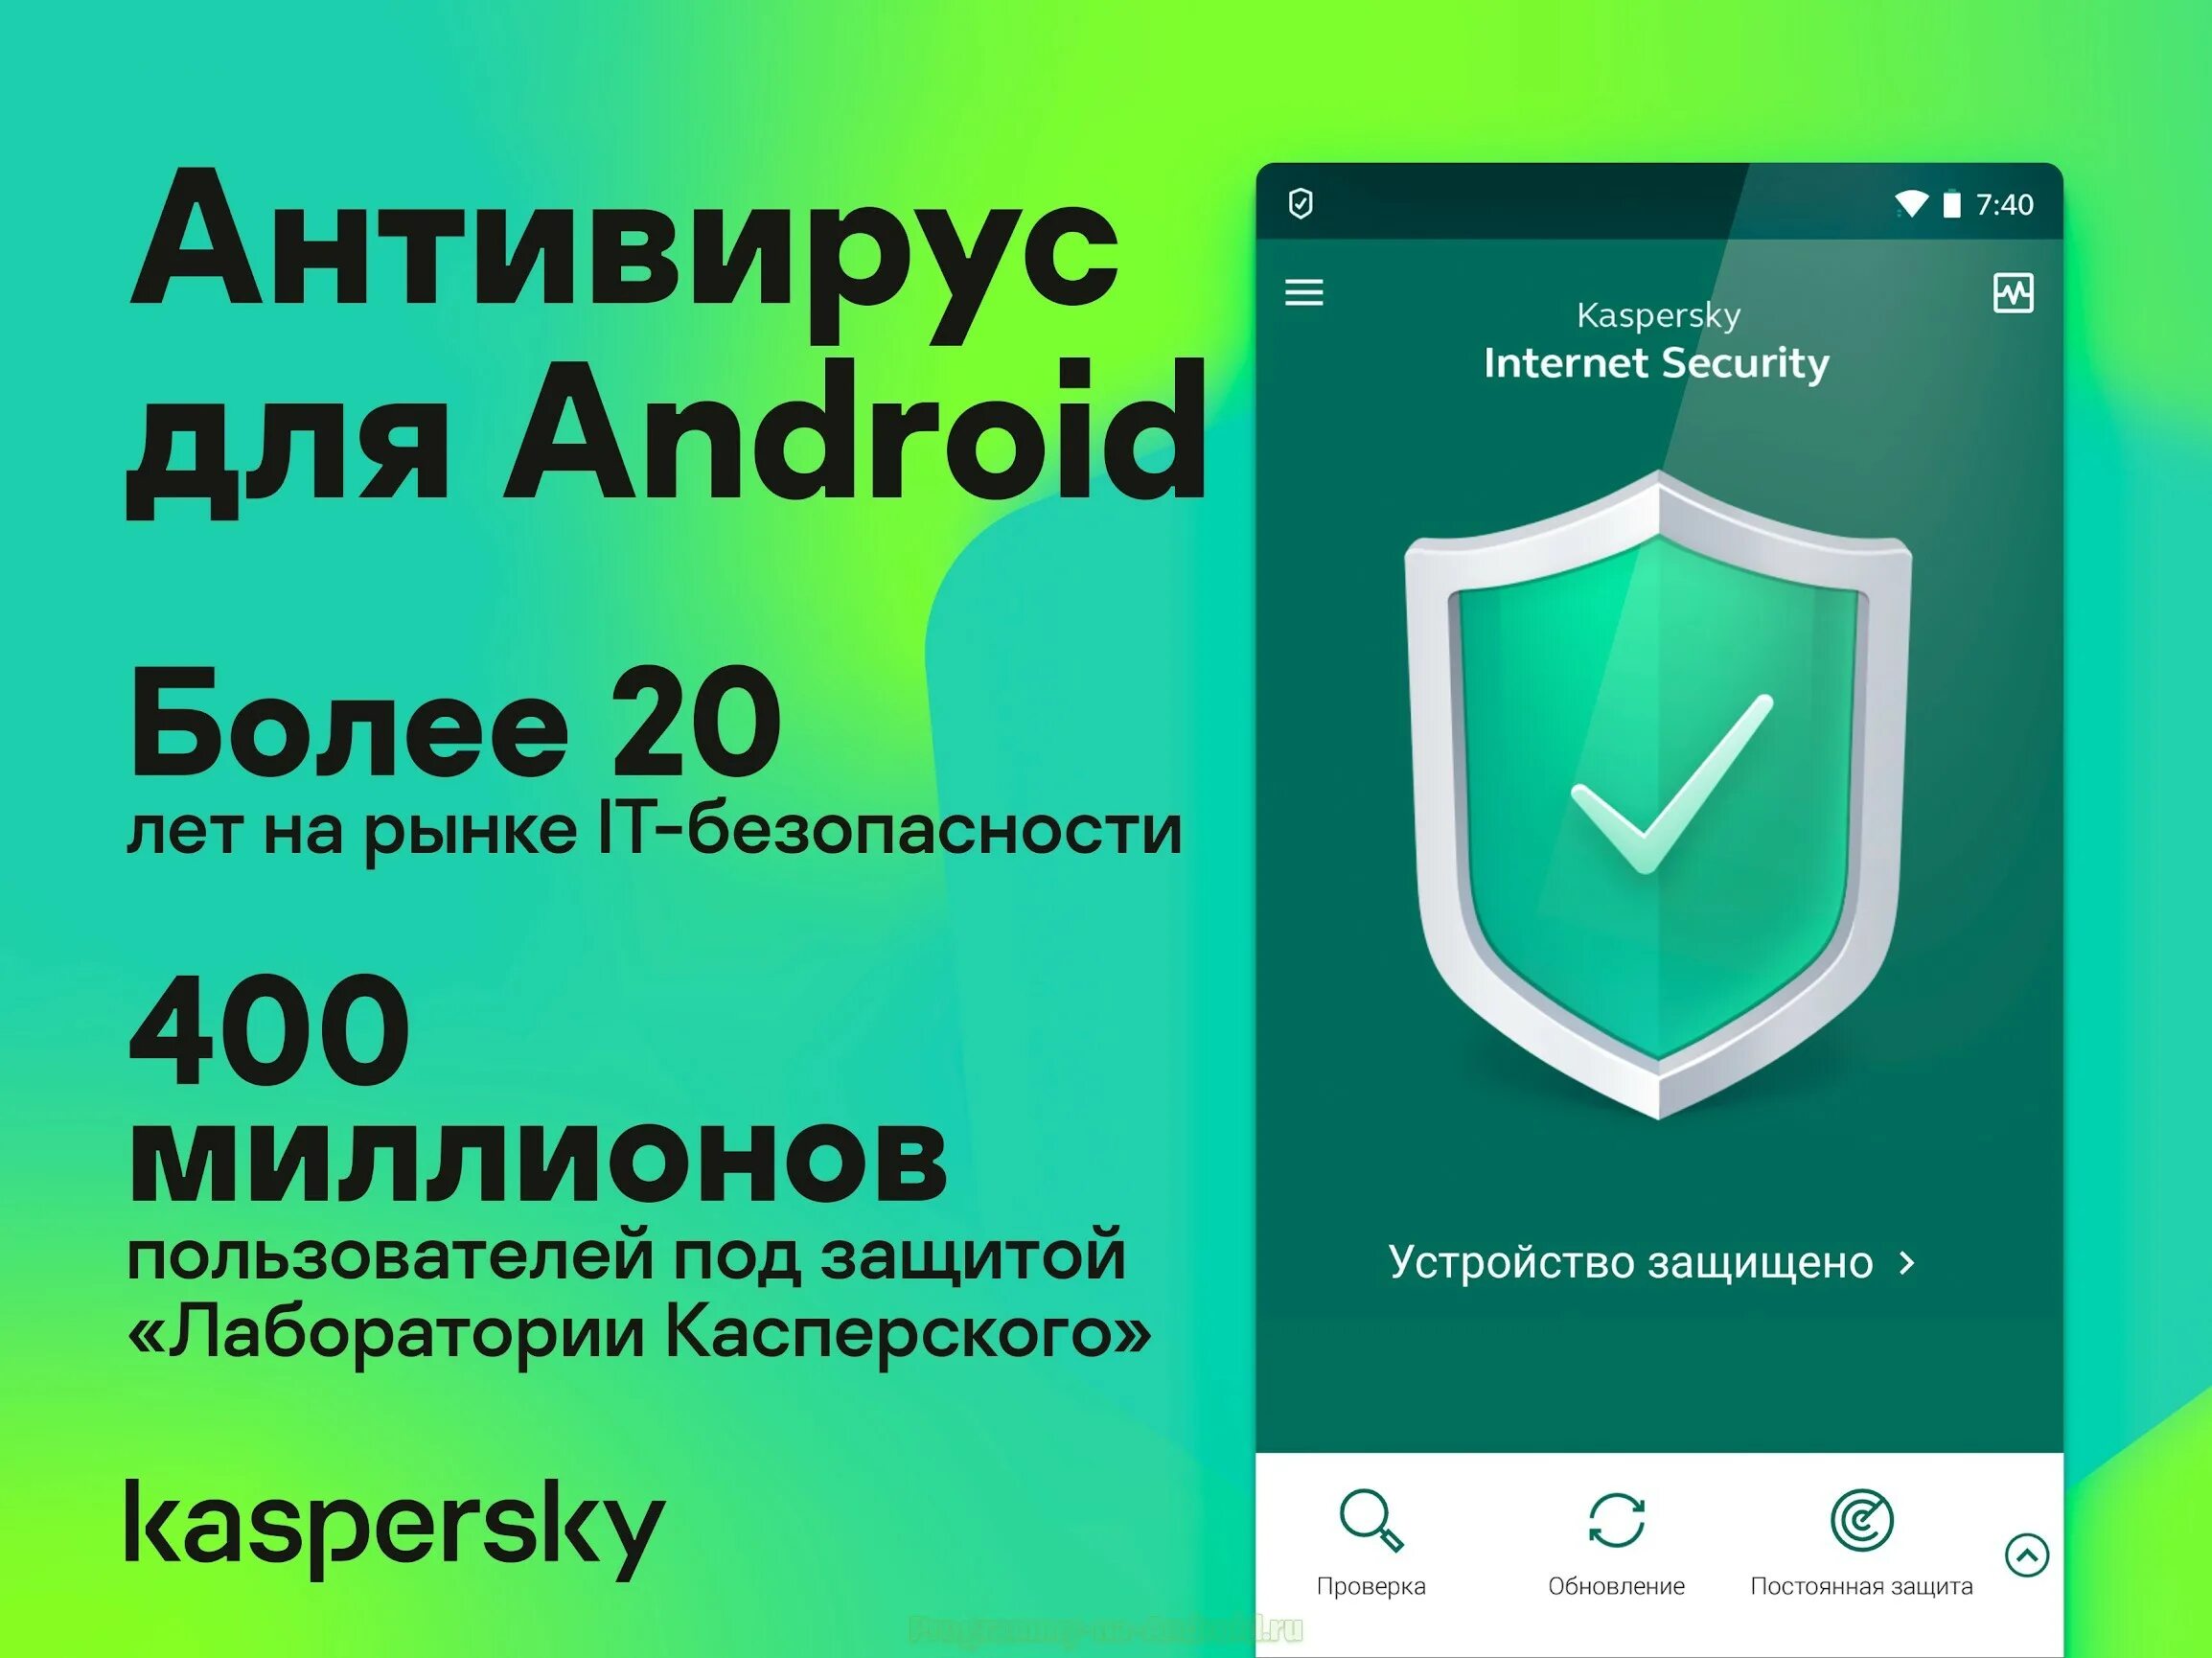 Https kaspersky ru downloads. Антивирус. Антивирус Android. Касперский Internet Security. Касперский антивирус для андроид.